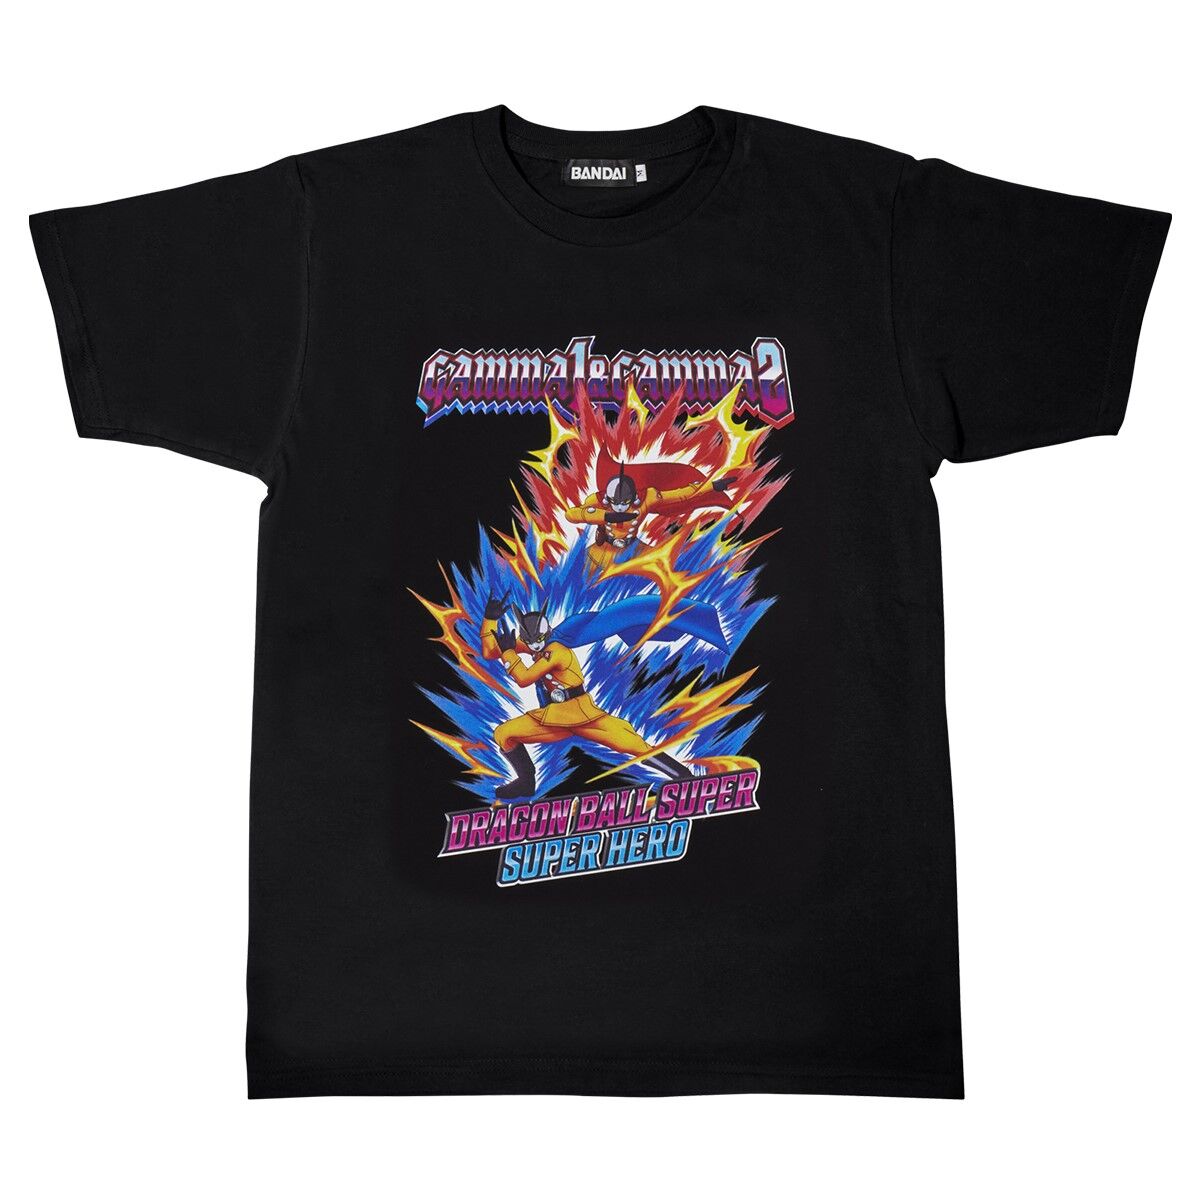 ドラゴンボール超 スーパーヒーロー 公開記念Tシャツ -ガンマ1号